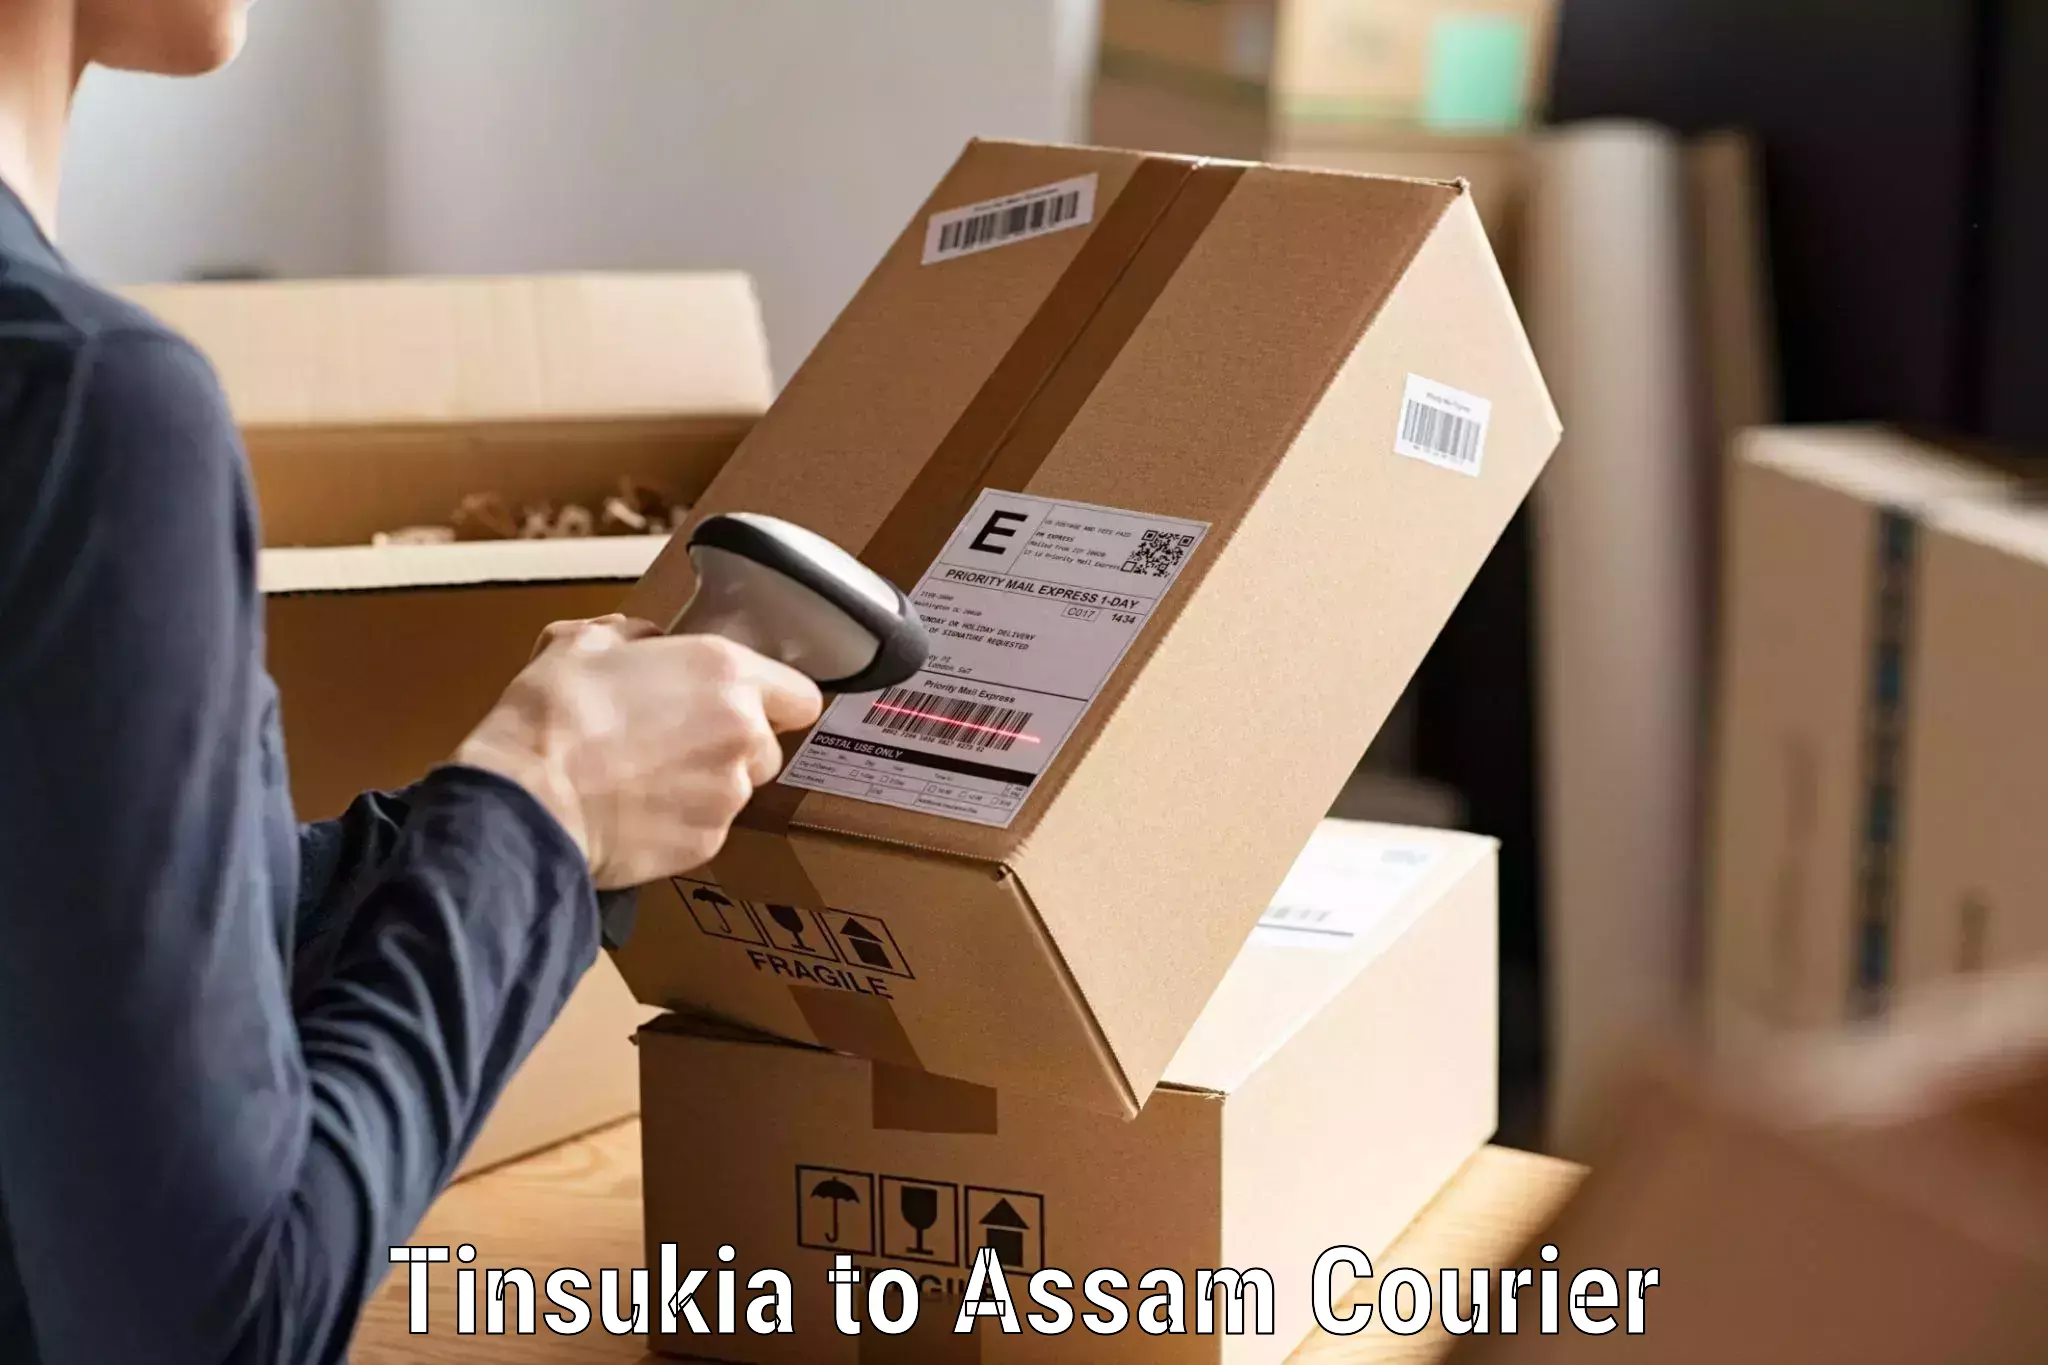 Online courier booking Tinsukia to Tezpur